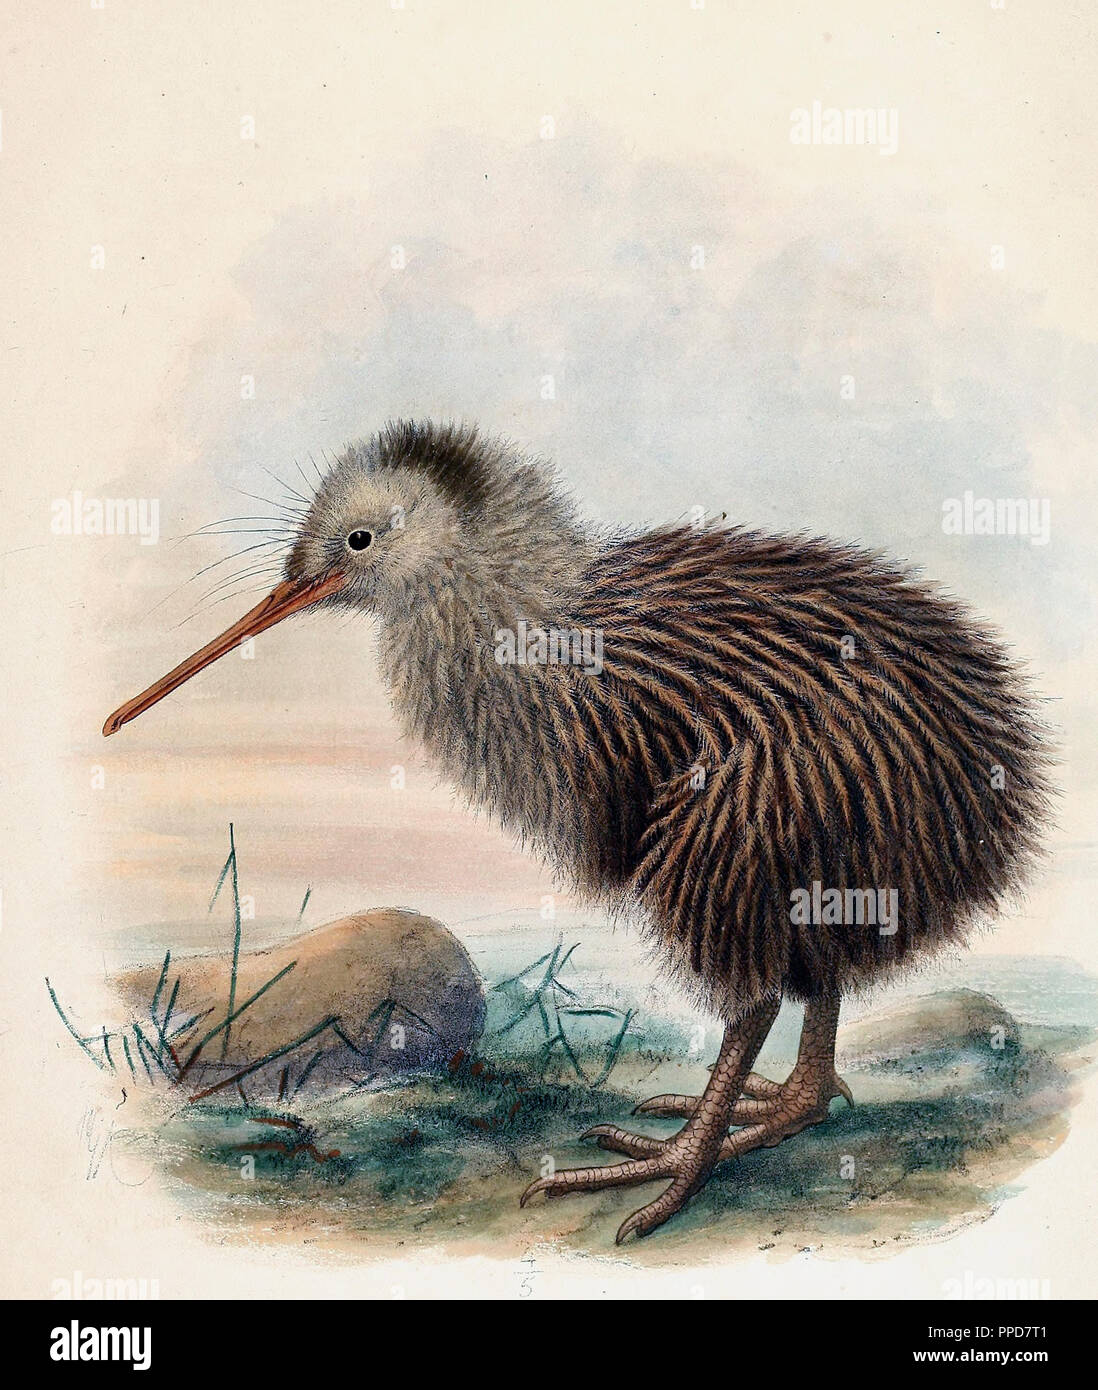 Apteryx Australis capretti - il sud del brown kiwi, tokoeka, o comune kiwi, Apteryx australis, è una specie di kiwi dall'Isola Sud della Nuova Zelanda Foto Stock